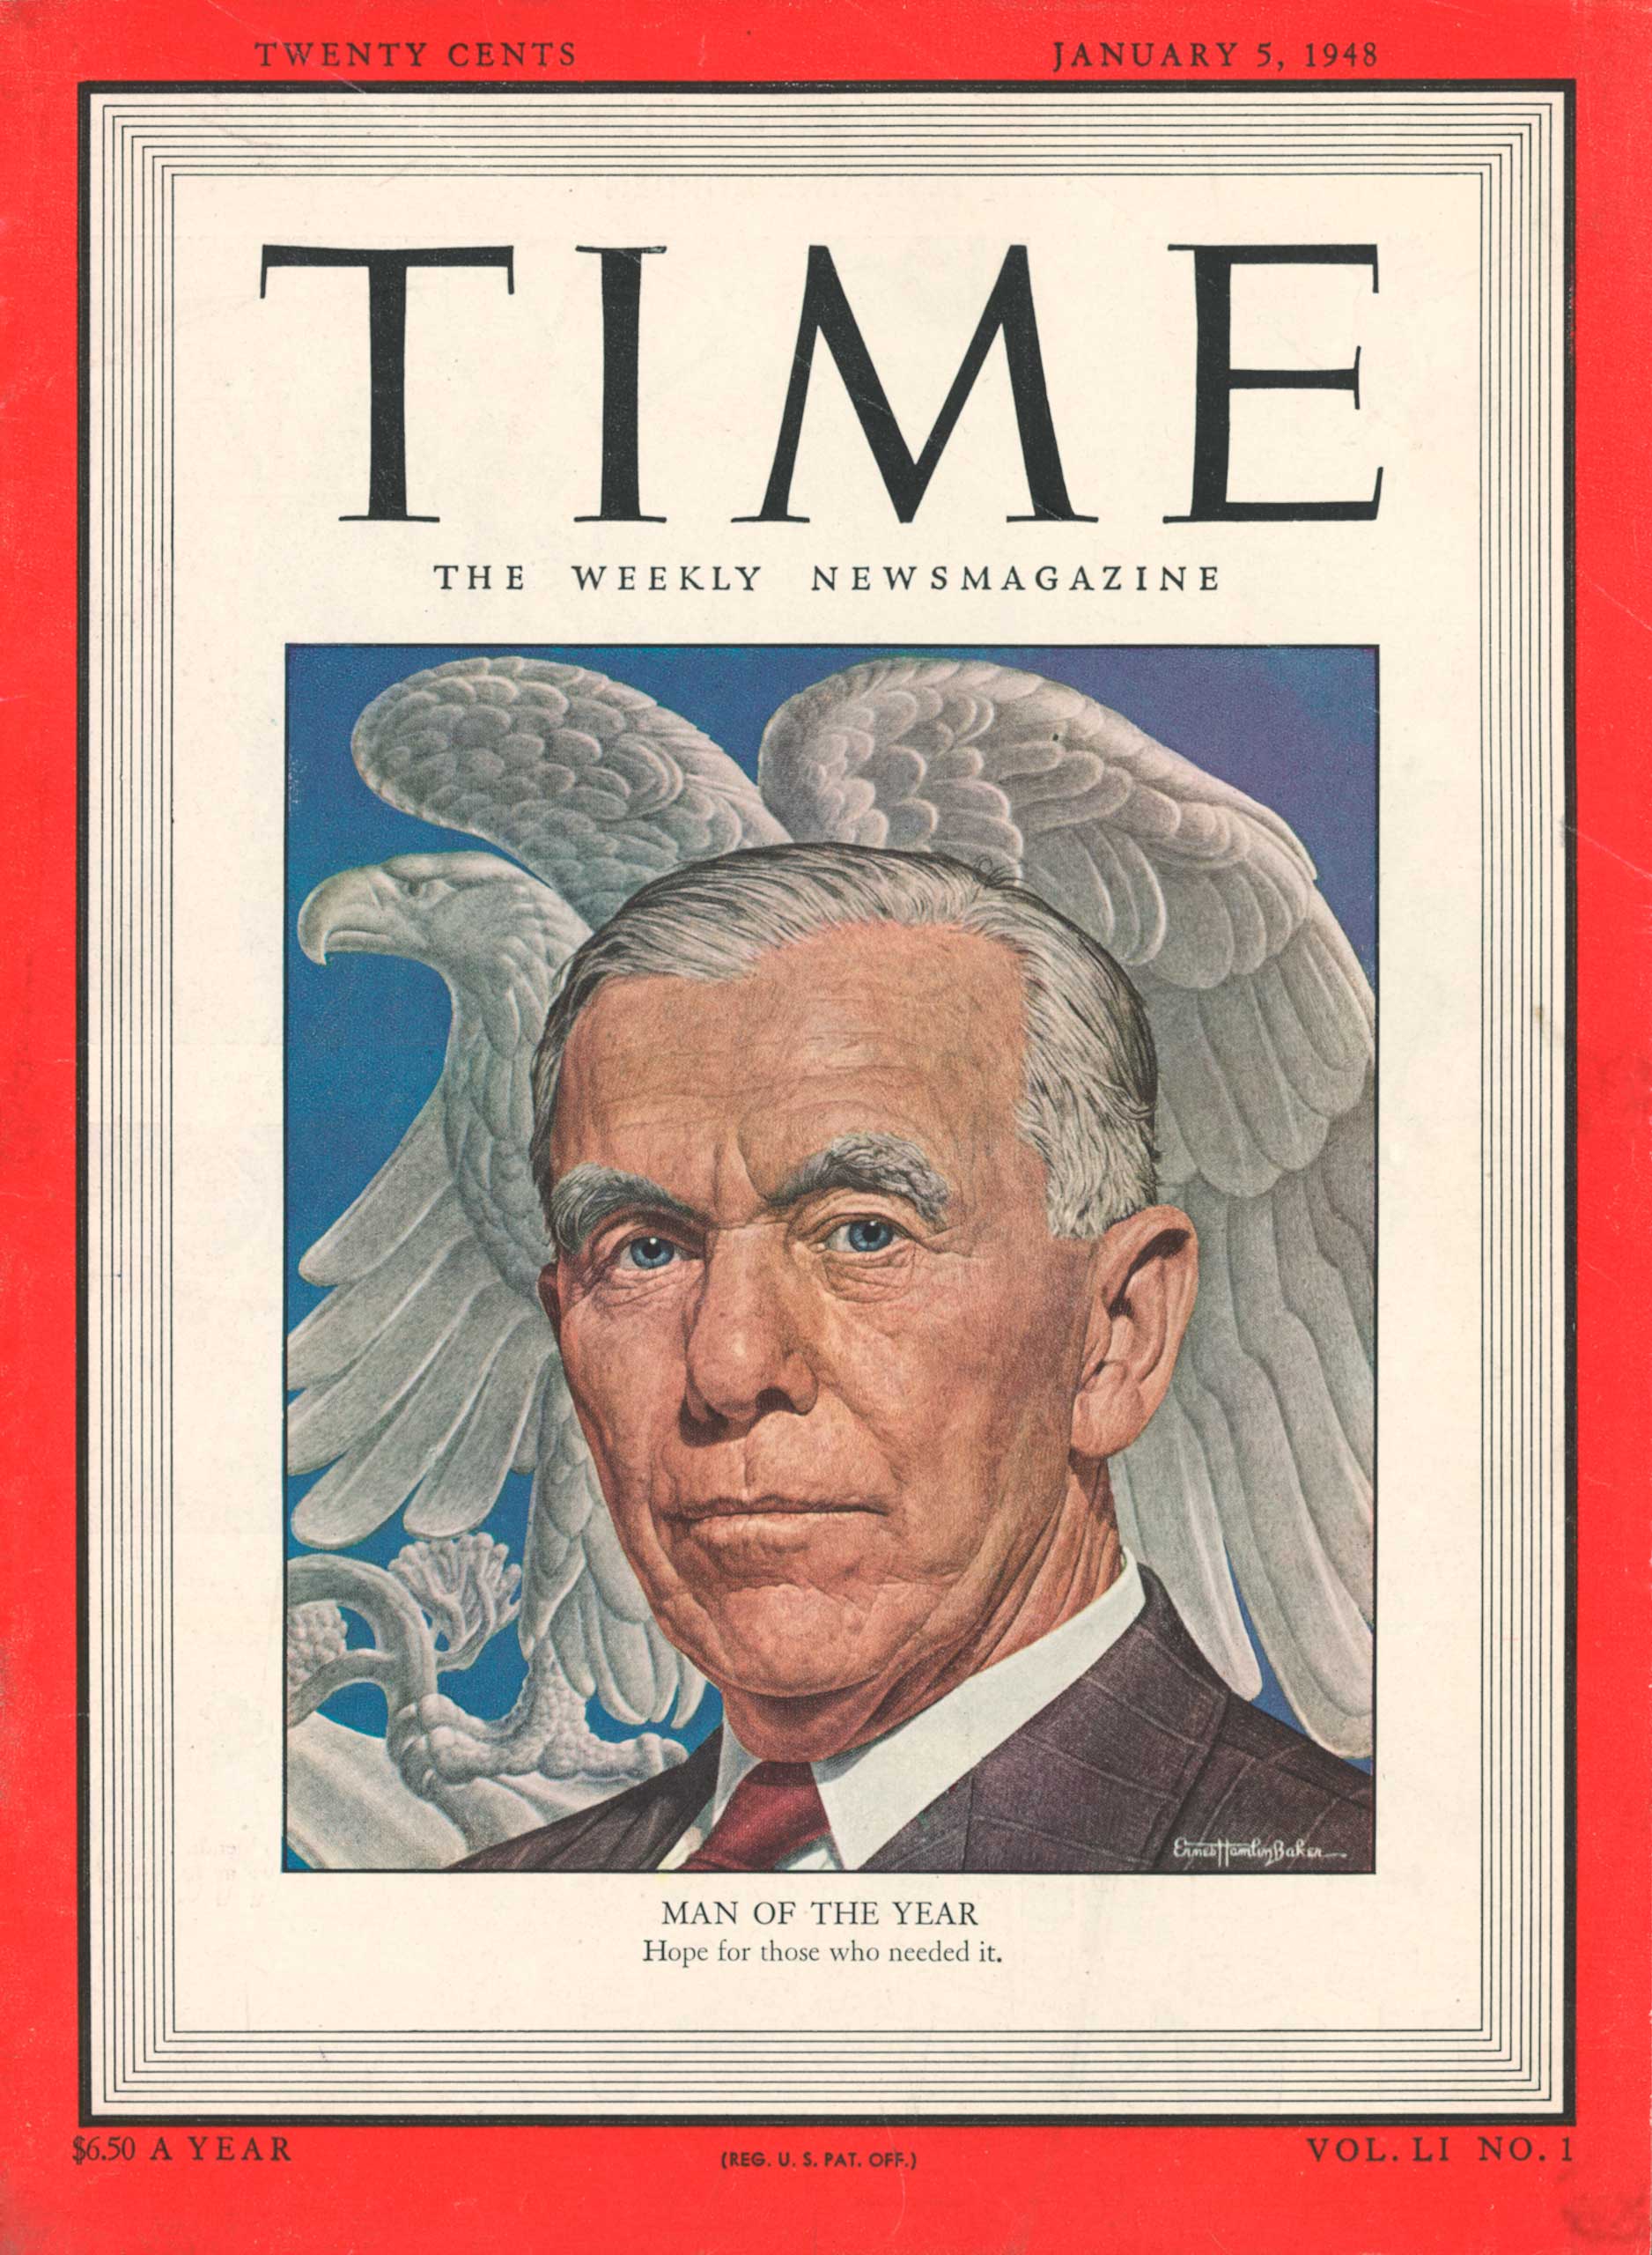 1947: George Marshall